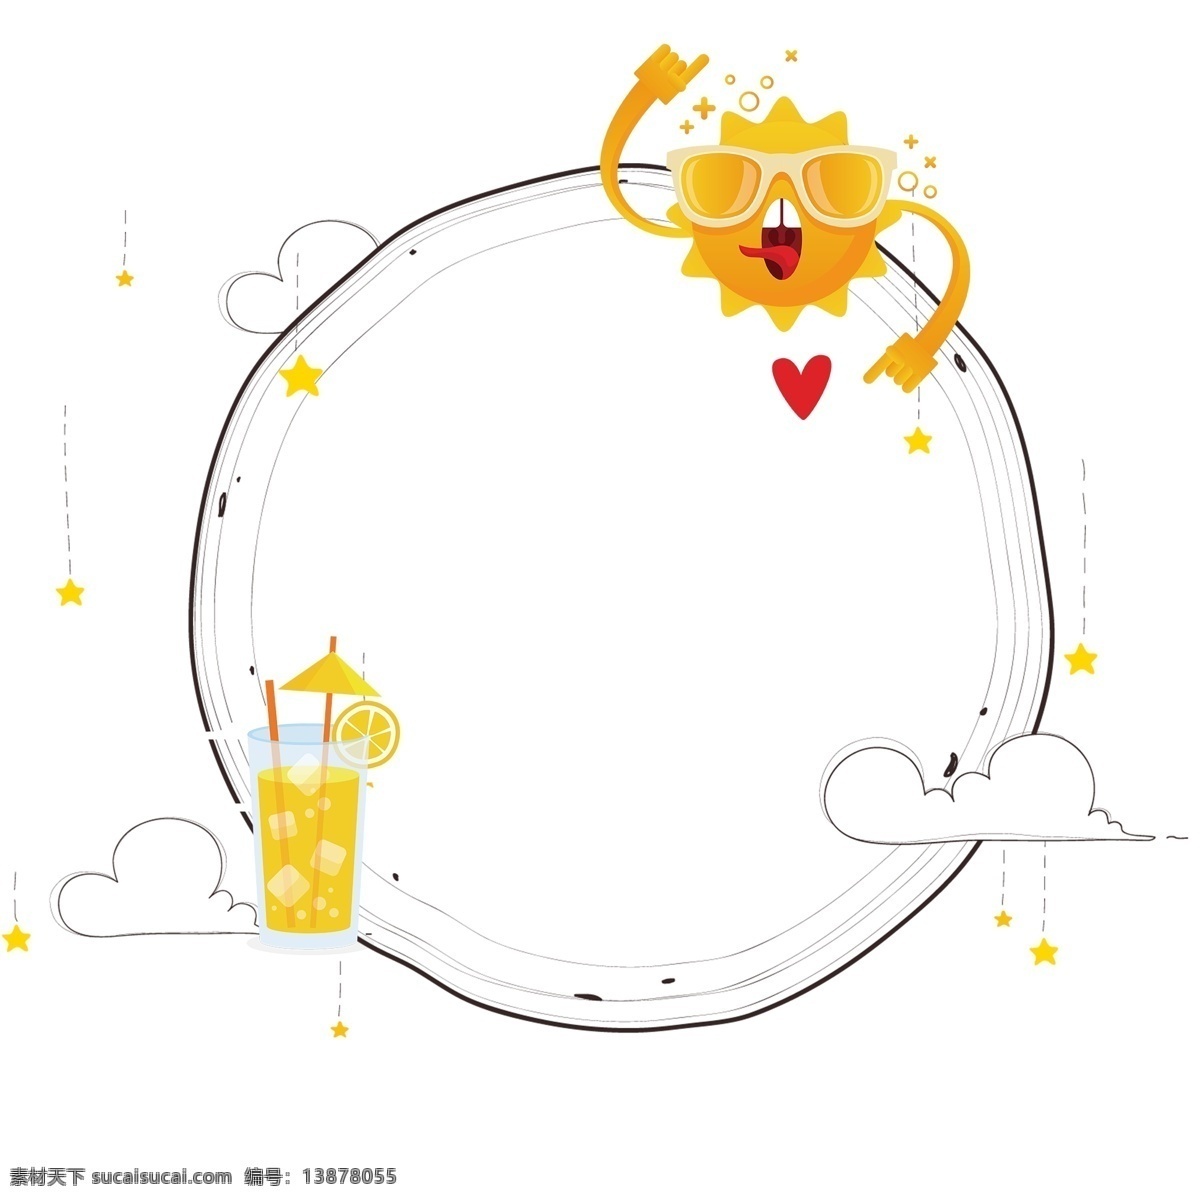 可爱 边框 夏季 饮料 圆形 夏季医疗 云朵 太阳 可爱边框 清新边框 卡通 唯美 花朵 乐谱 气球 儿童 清新 标题框